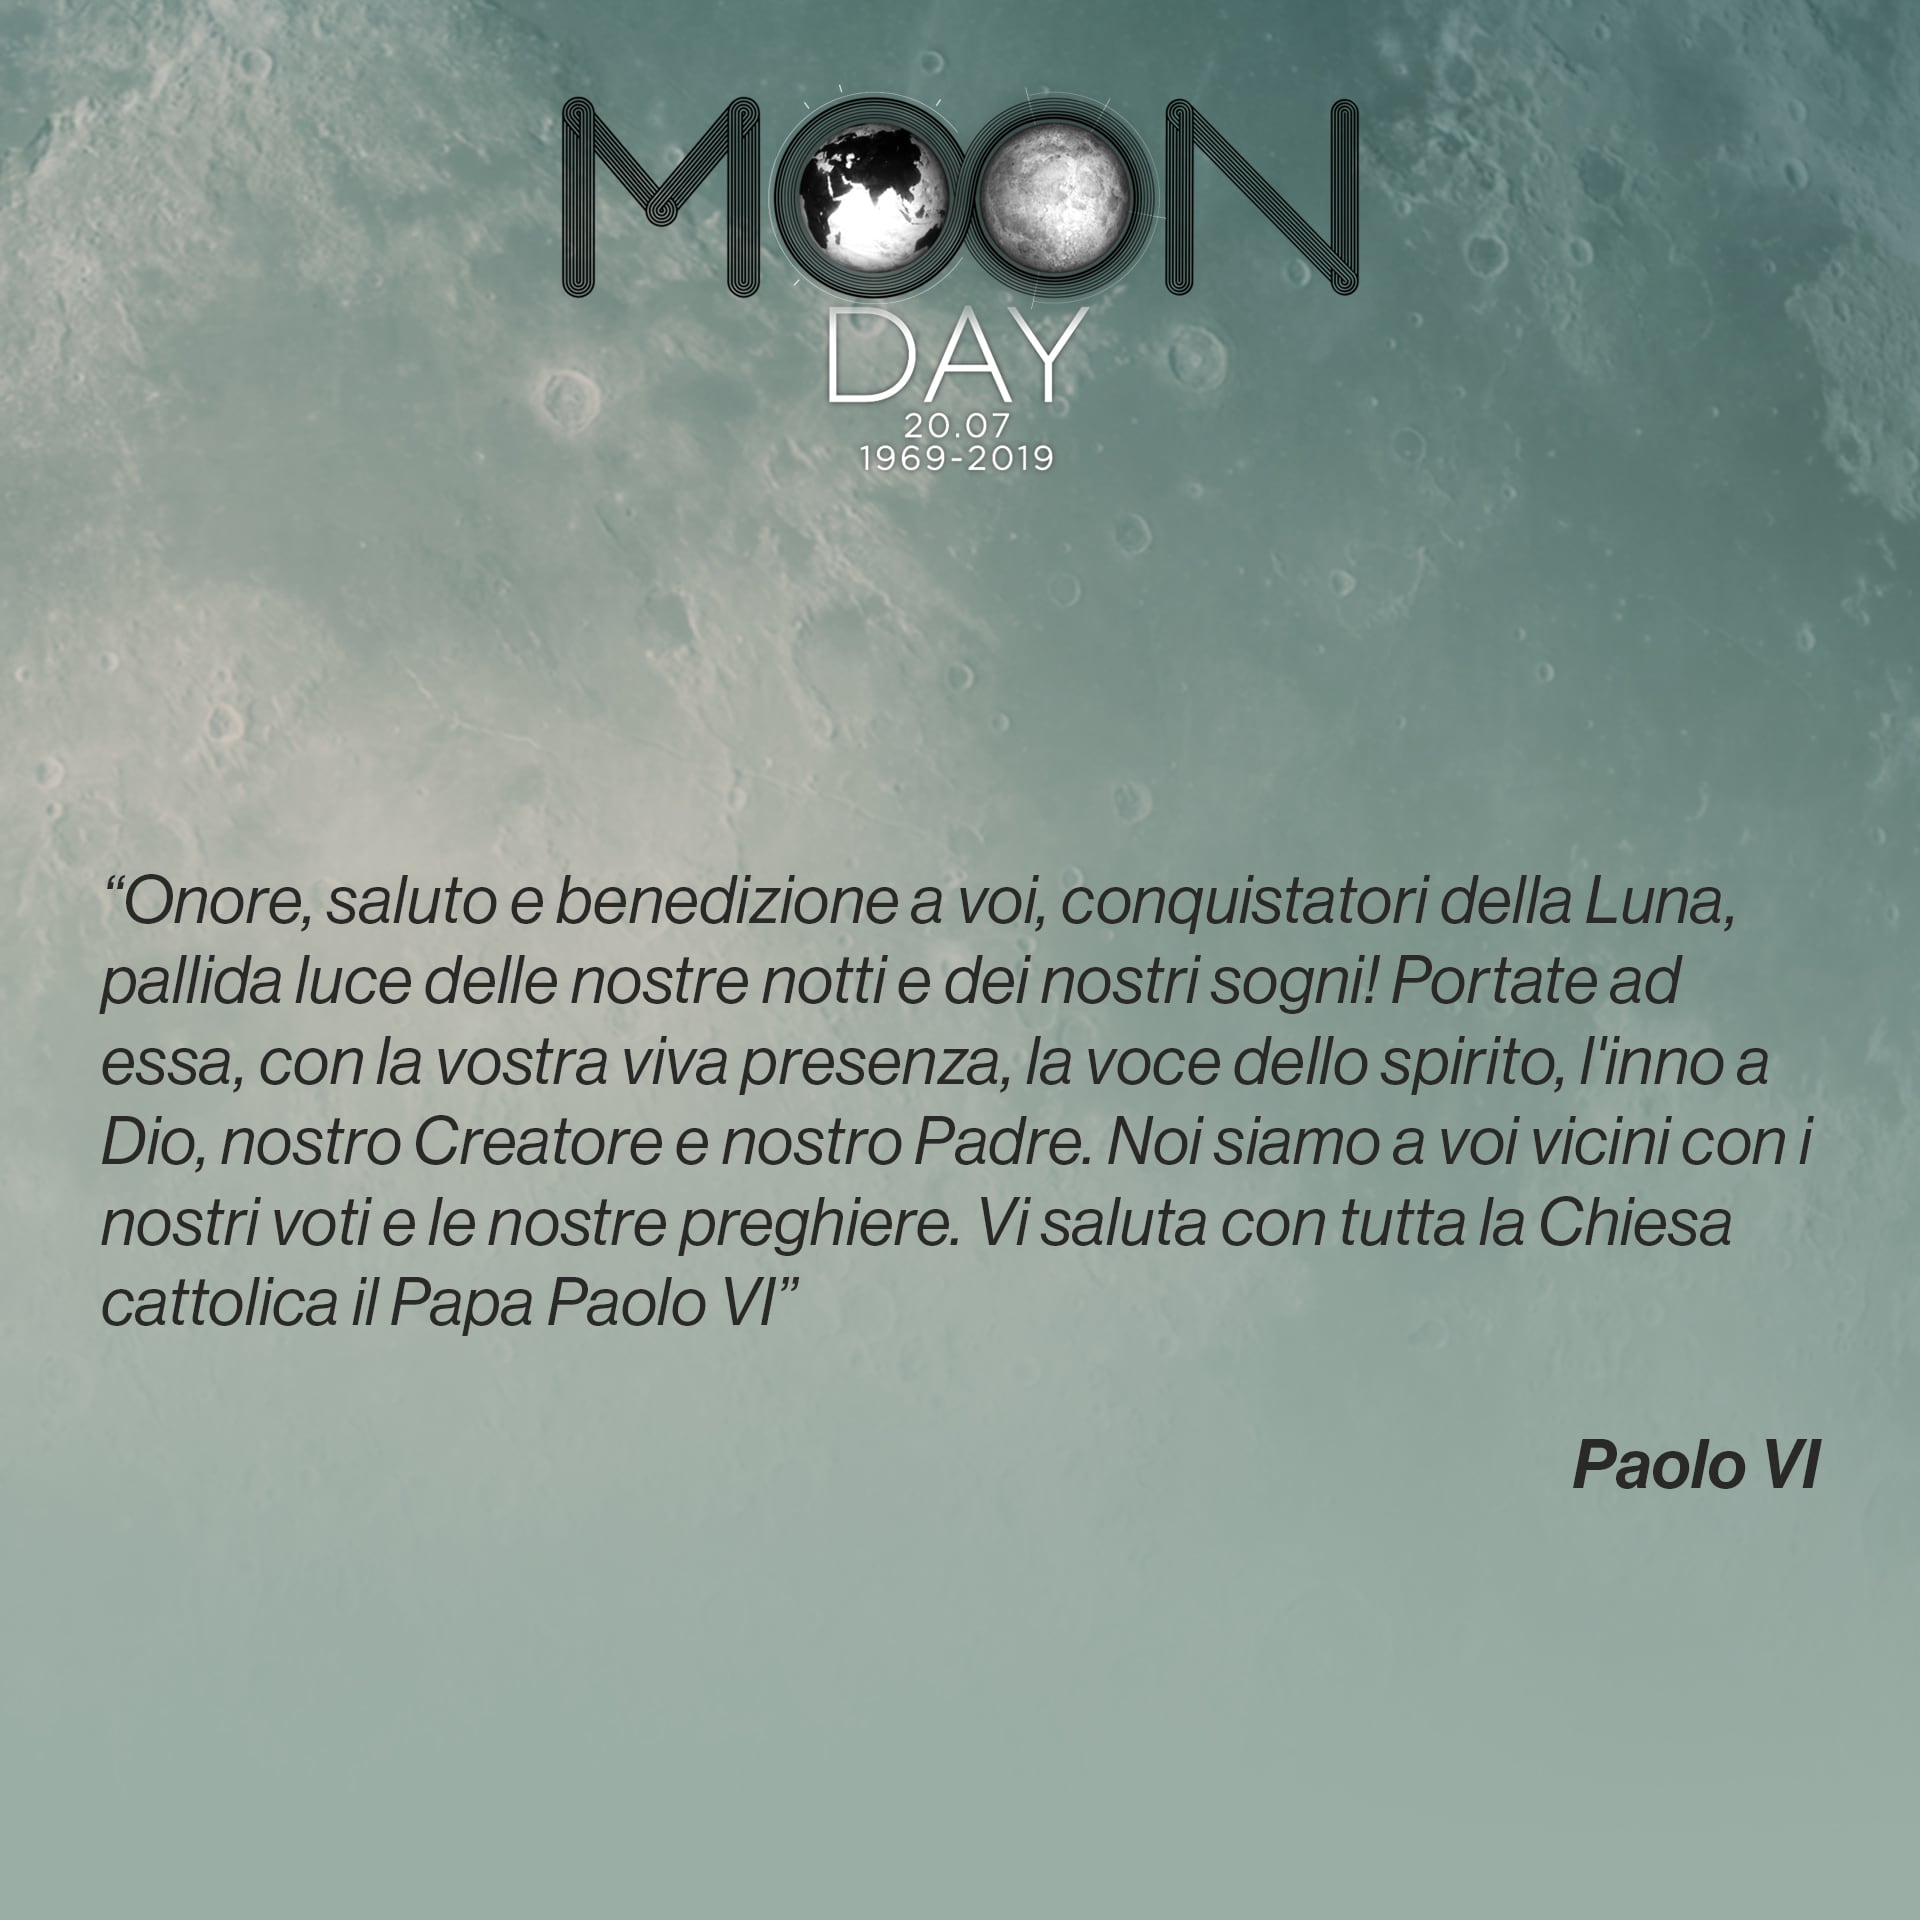 Il papa Paolo VI nel messaggio agli astronauti dopo l’arrivo sul suolo lunare.